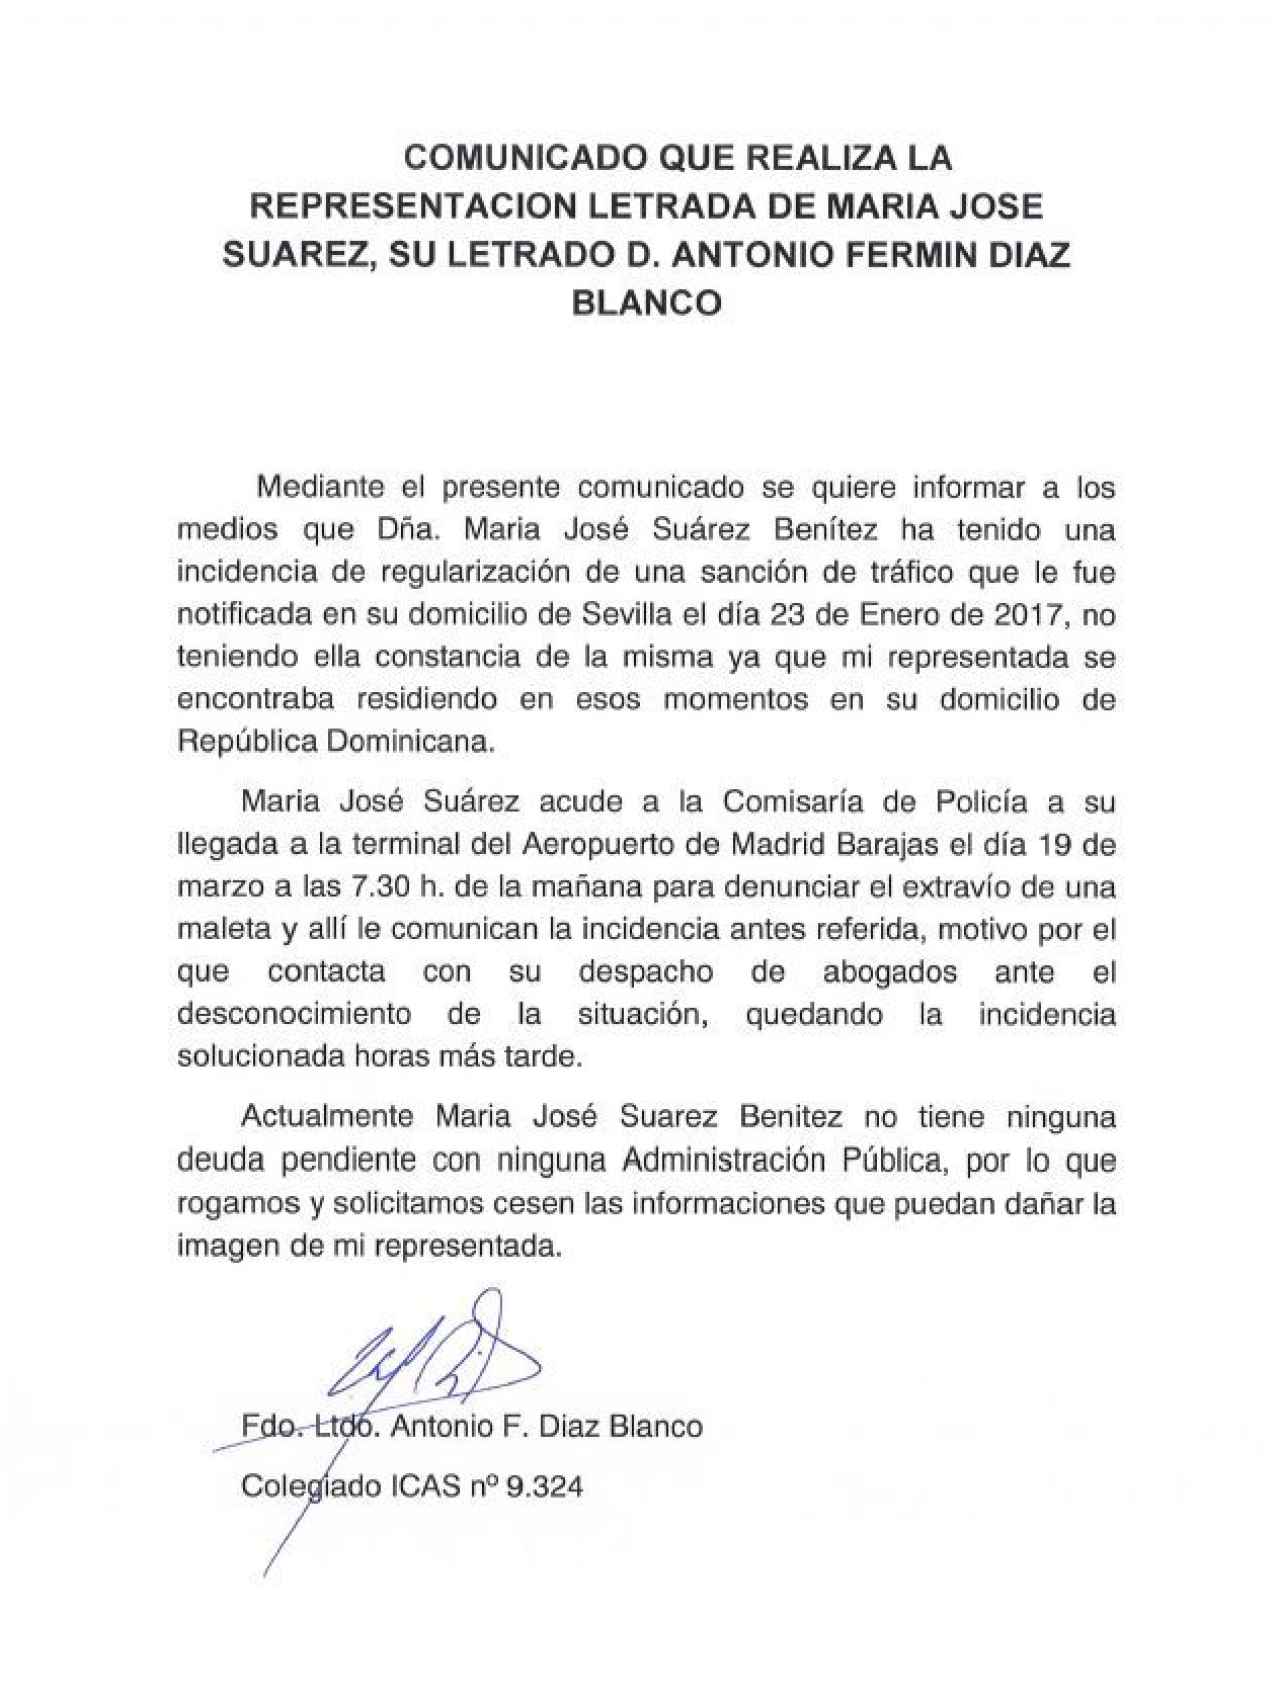 Comunicado oficial remitido por María José Suárez.